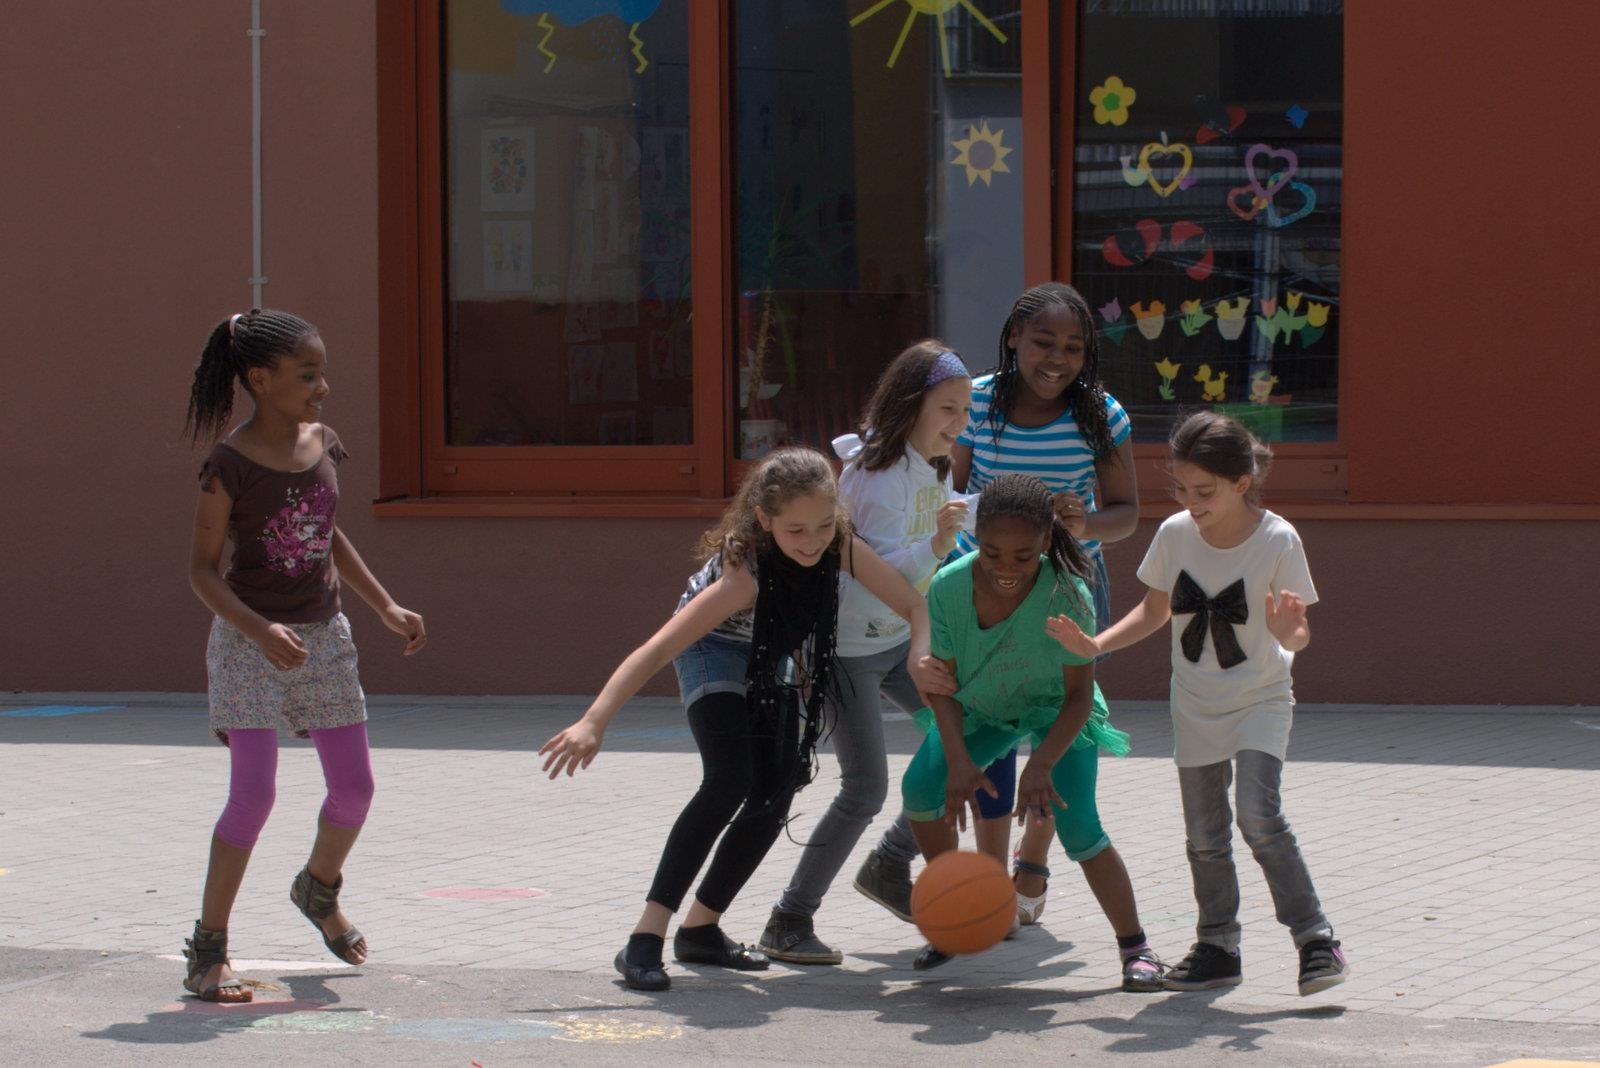 Kinder spielen auf einem Schulhof Basketball. 